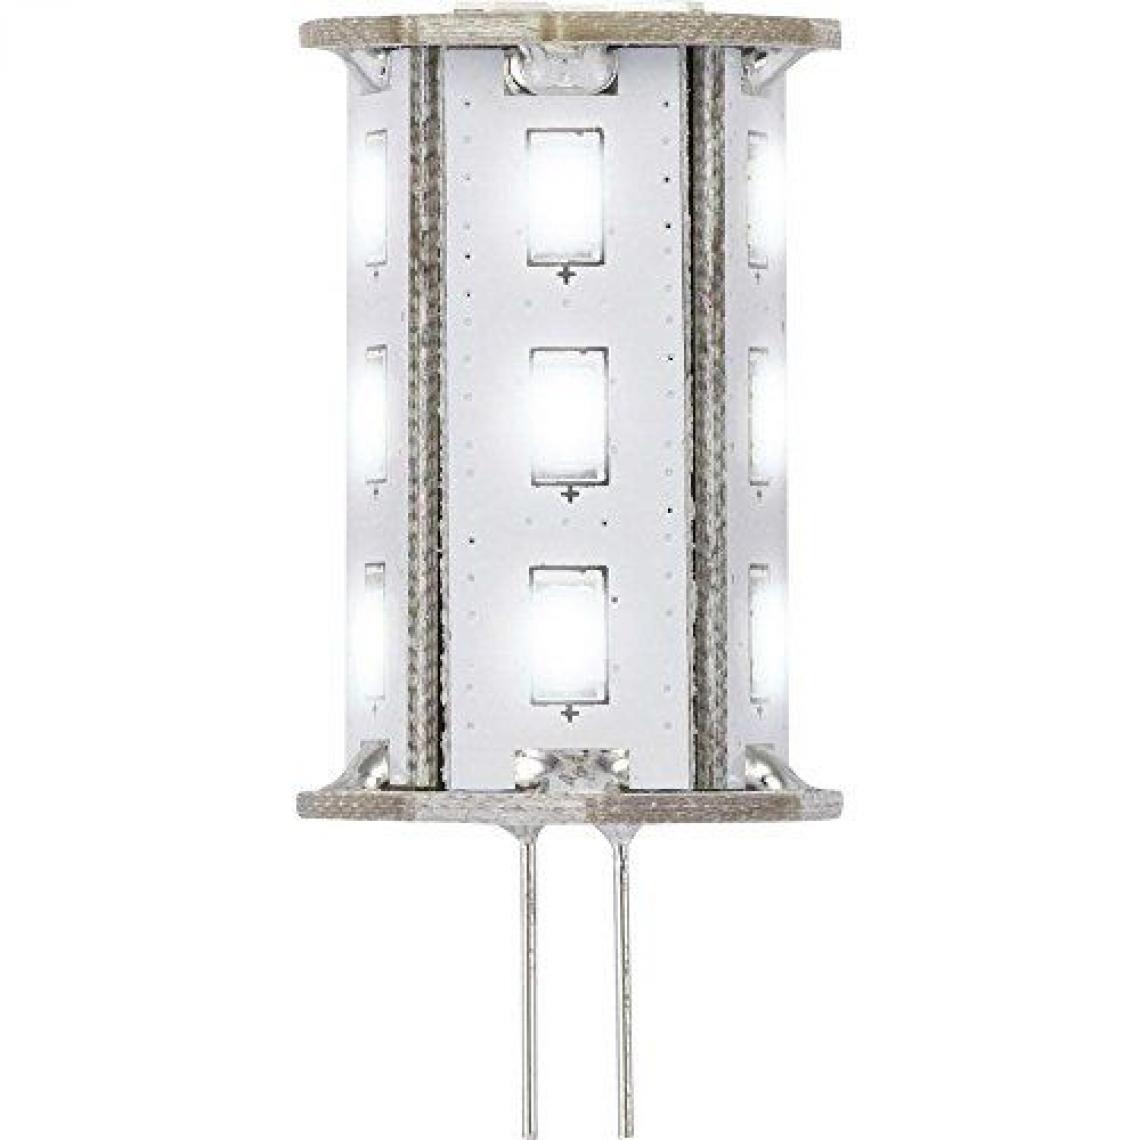 Inconnu - Ampoule LED G4 Renkforce 9283c71b à broches 2.4 W = 20 W blanc froid (Ø x L) 22 mm x 46.2 mm EEC: classe A 1 pc(s) - Ampoules LED